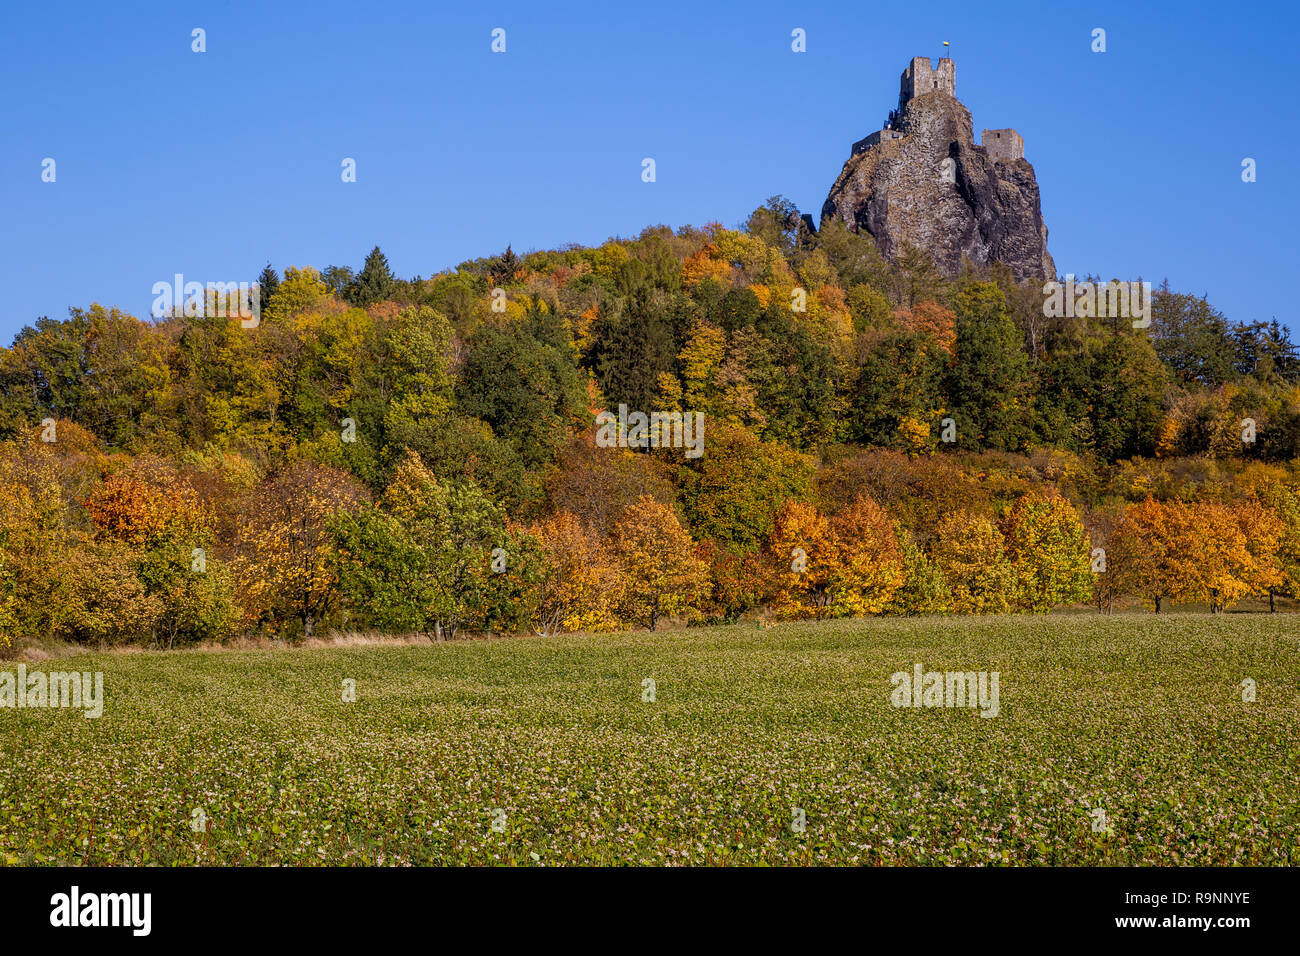 Herbst Landschaft in Böhmen dominierenden die Ruinen einer mittelalterlichen Burg auf einem Hügel und hohe Felsen. Historisches Wahrzeichen der Tschechischen Republik und eine beliebte Stockfoto